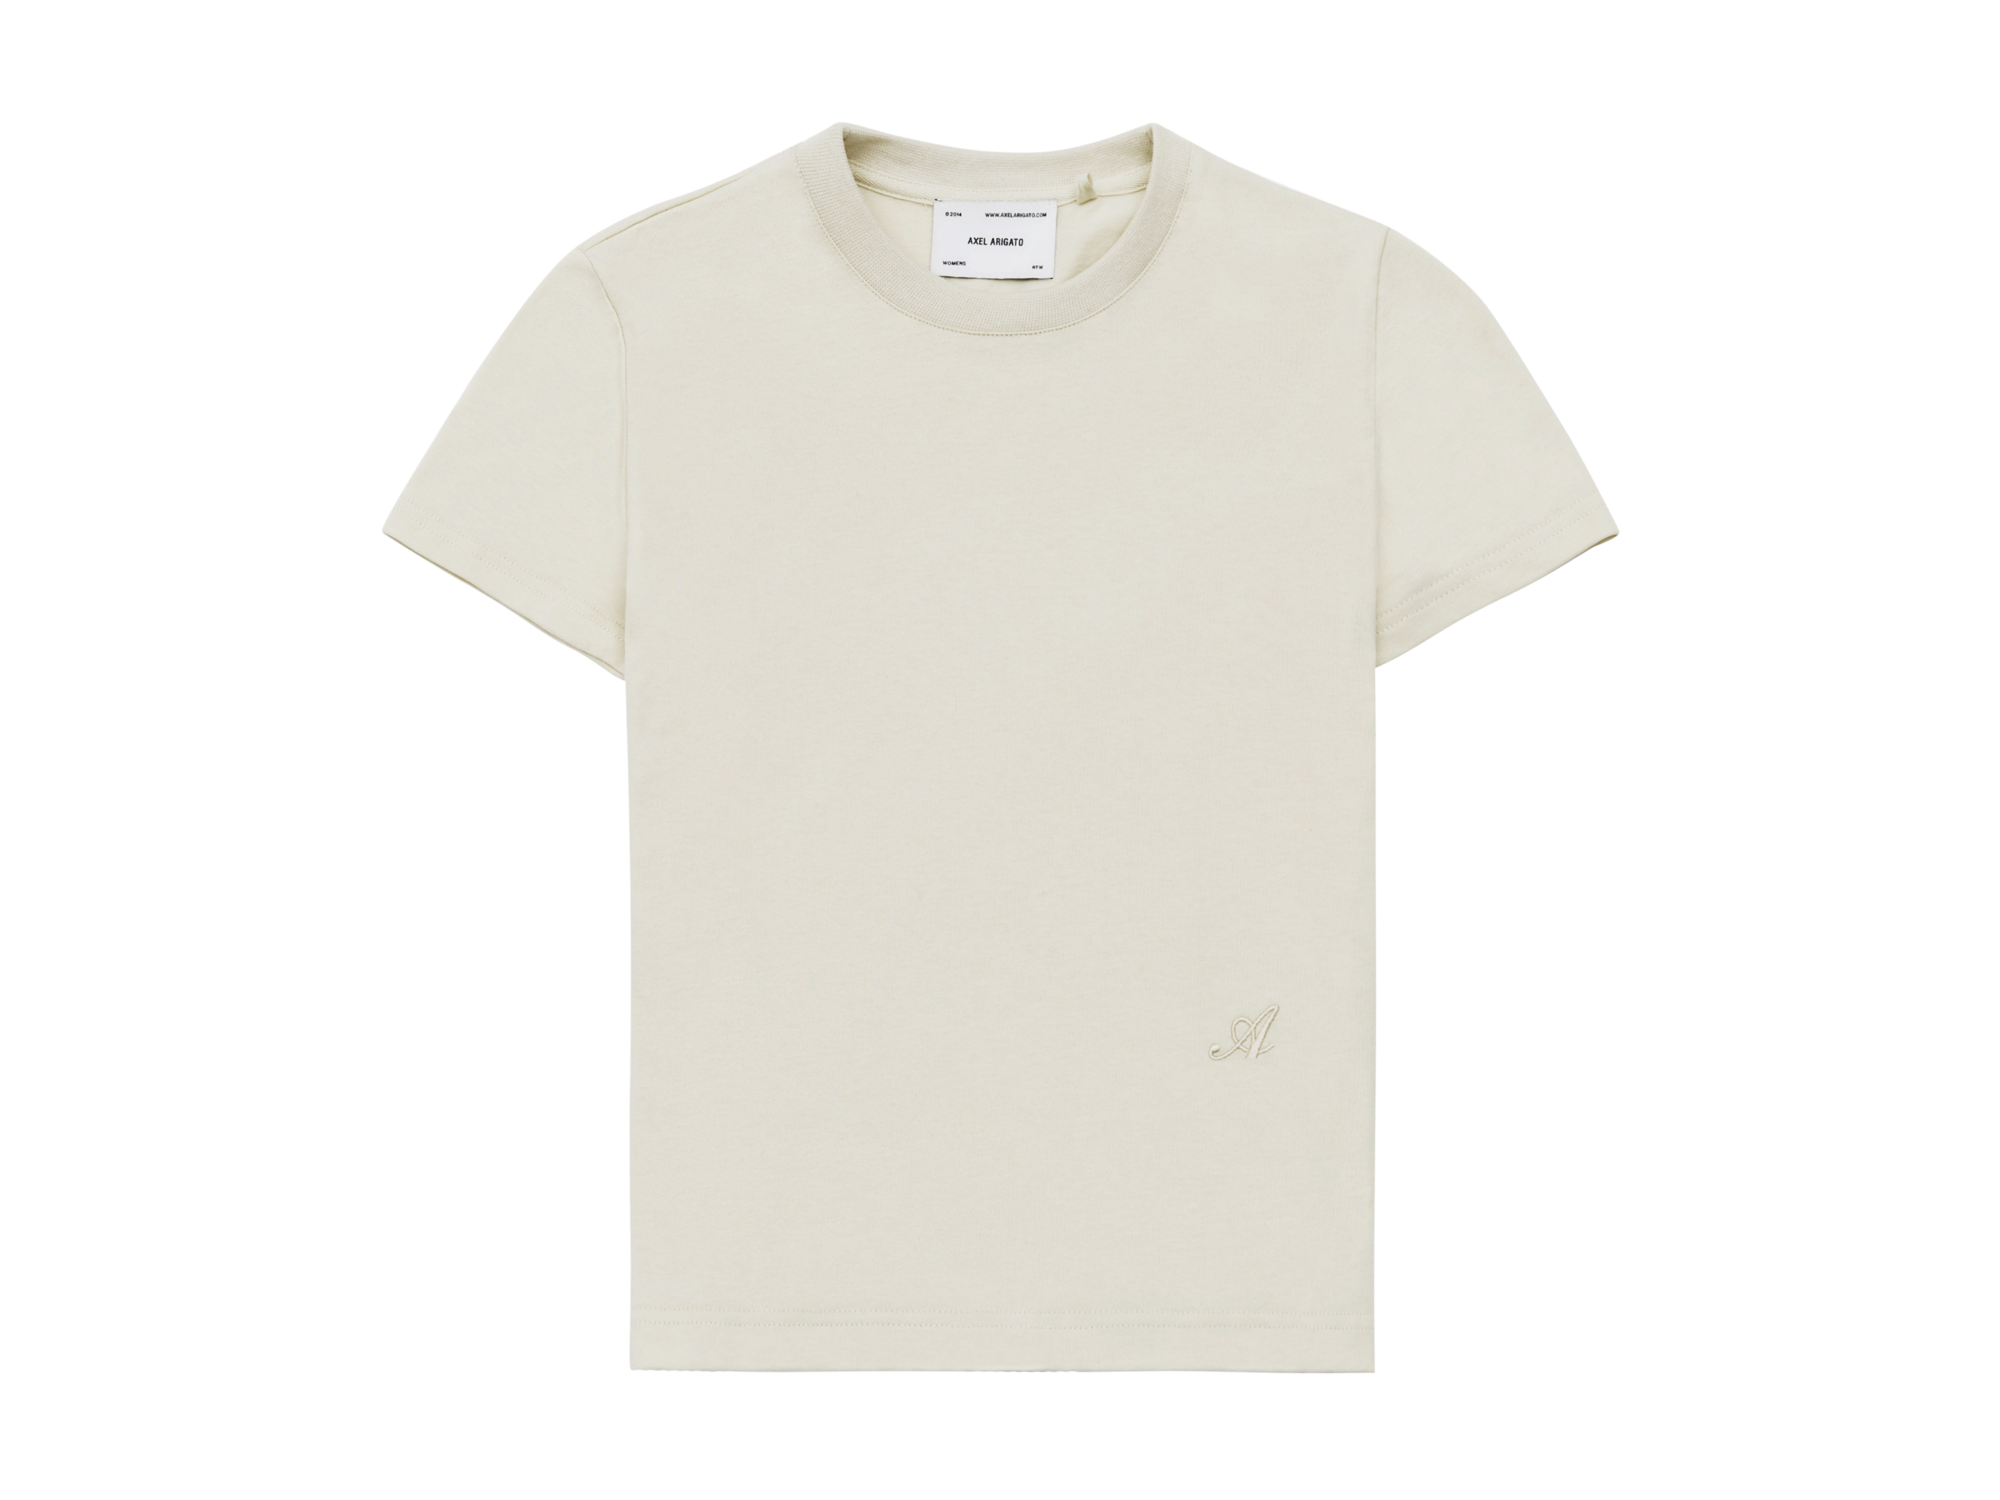 Signature Slim T-Shirt